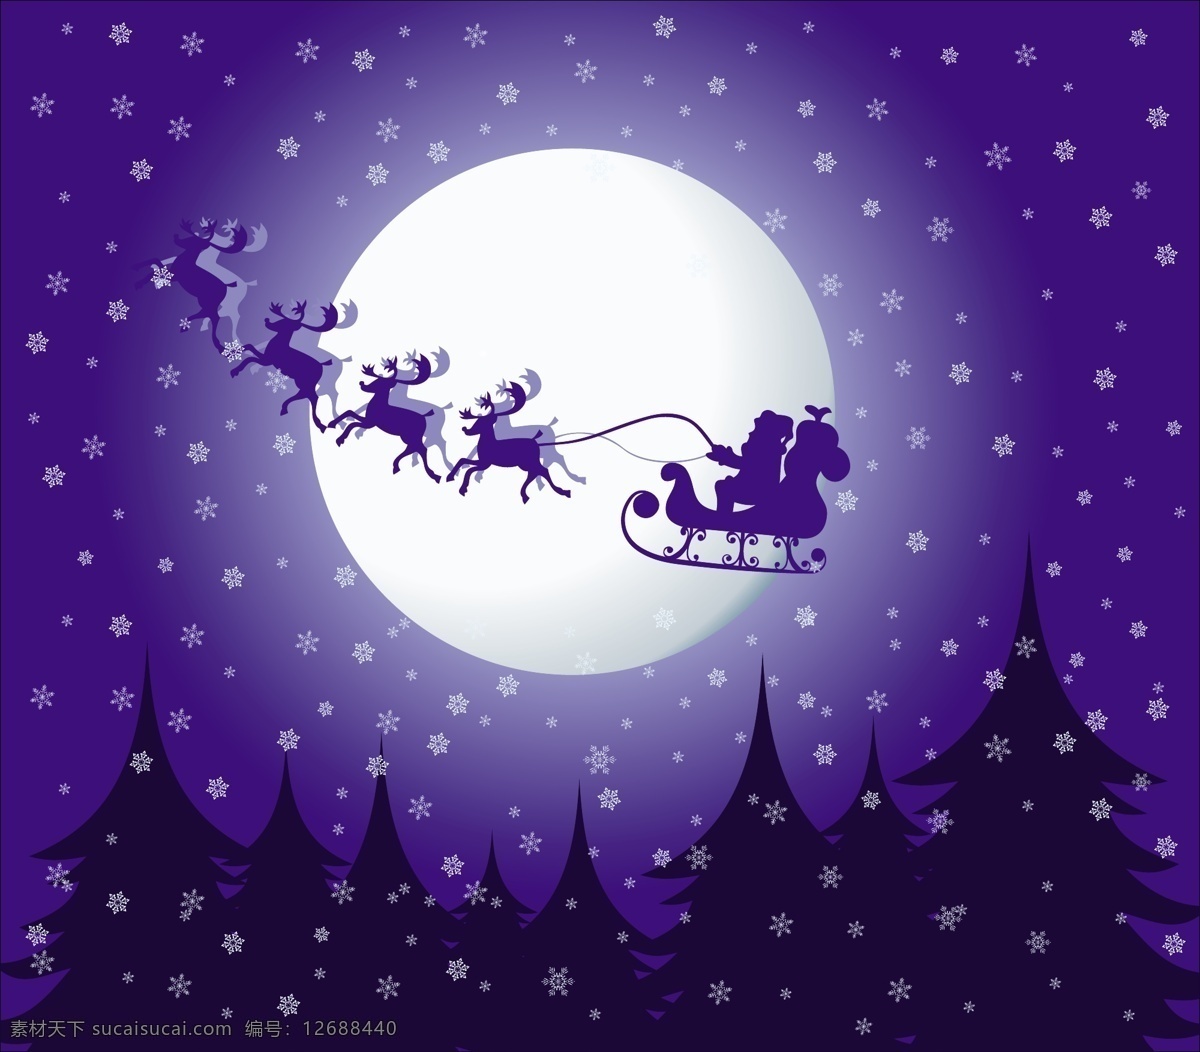 圣诞 夜晚 矢量 节日 蓝色 麋鹿 圣诞节 圣诞老人 圣诞树 雪花 雪橇 月亮 节日素材